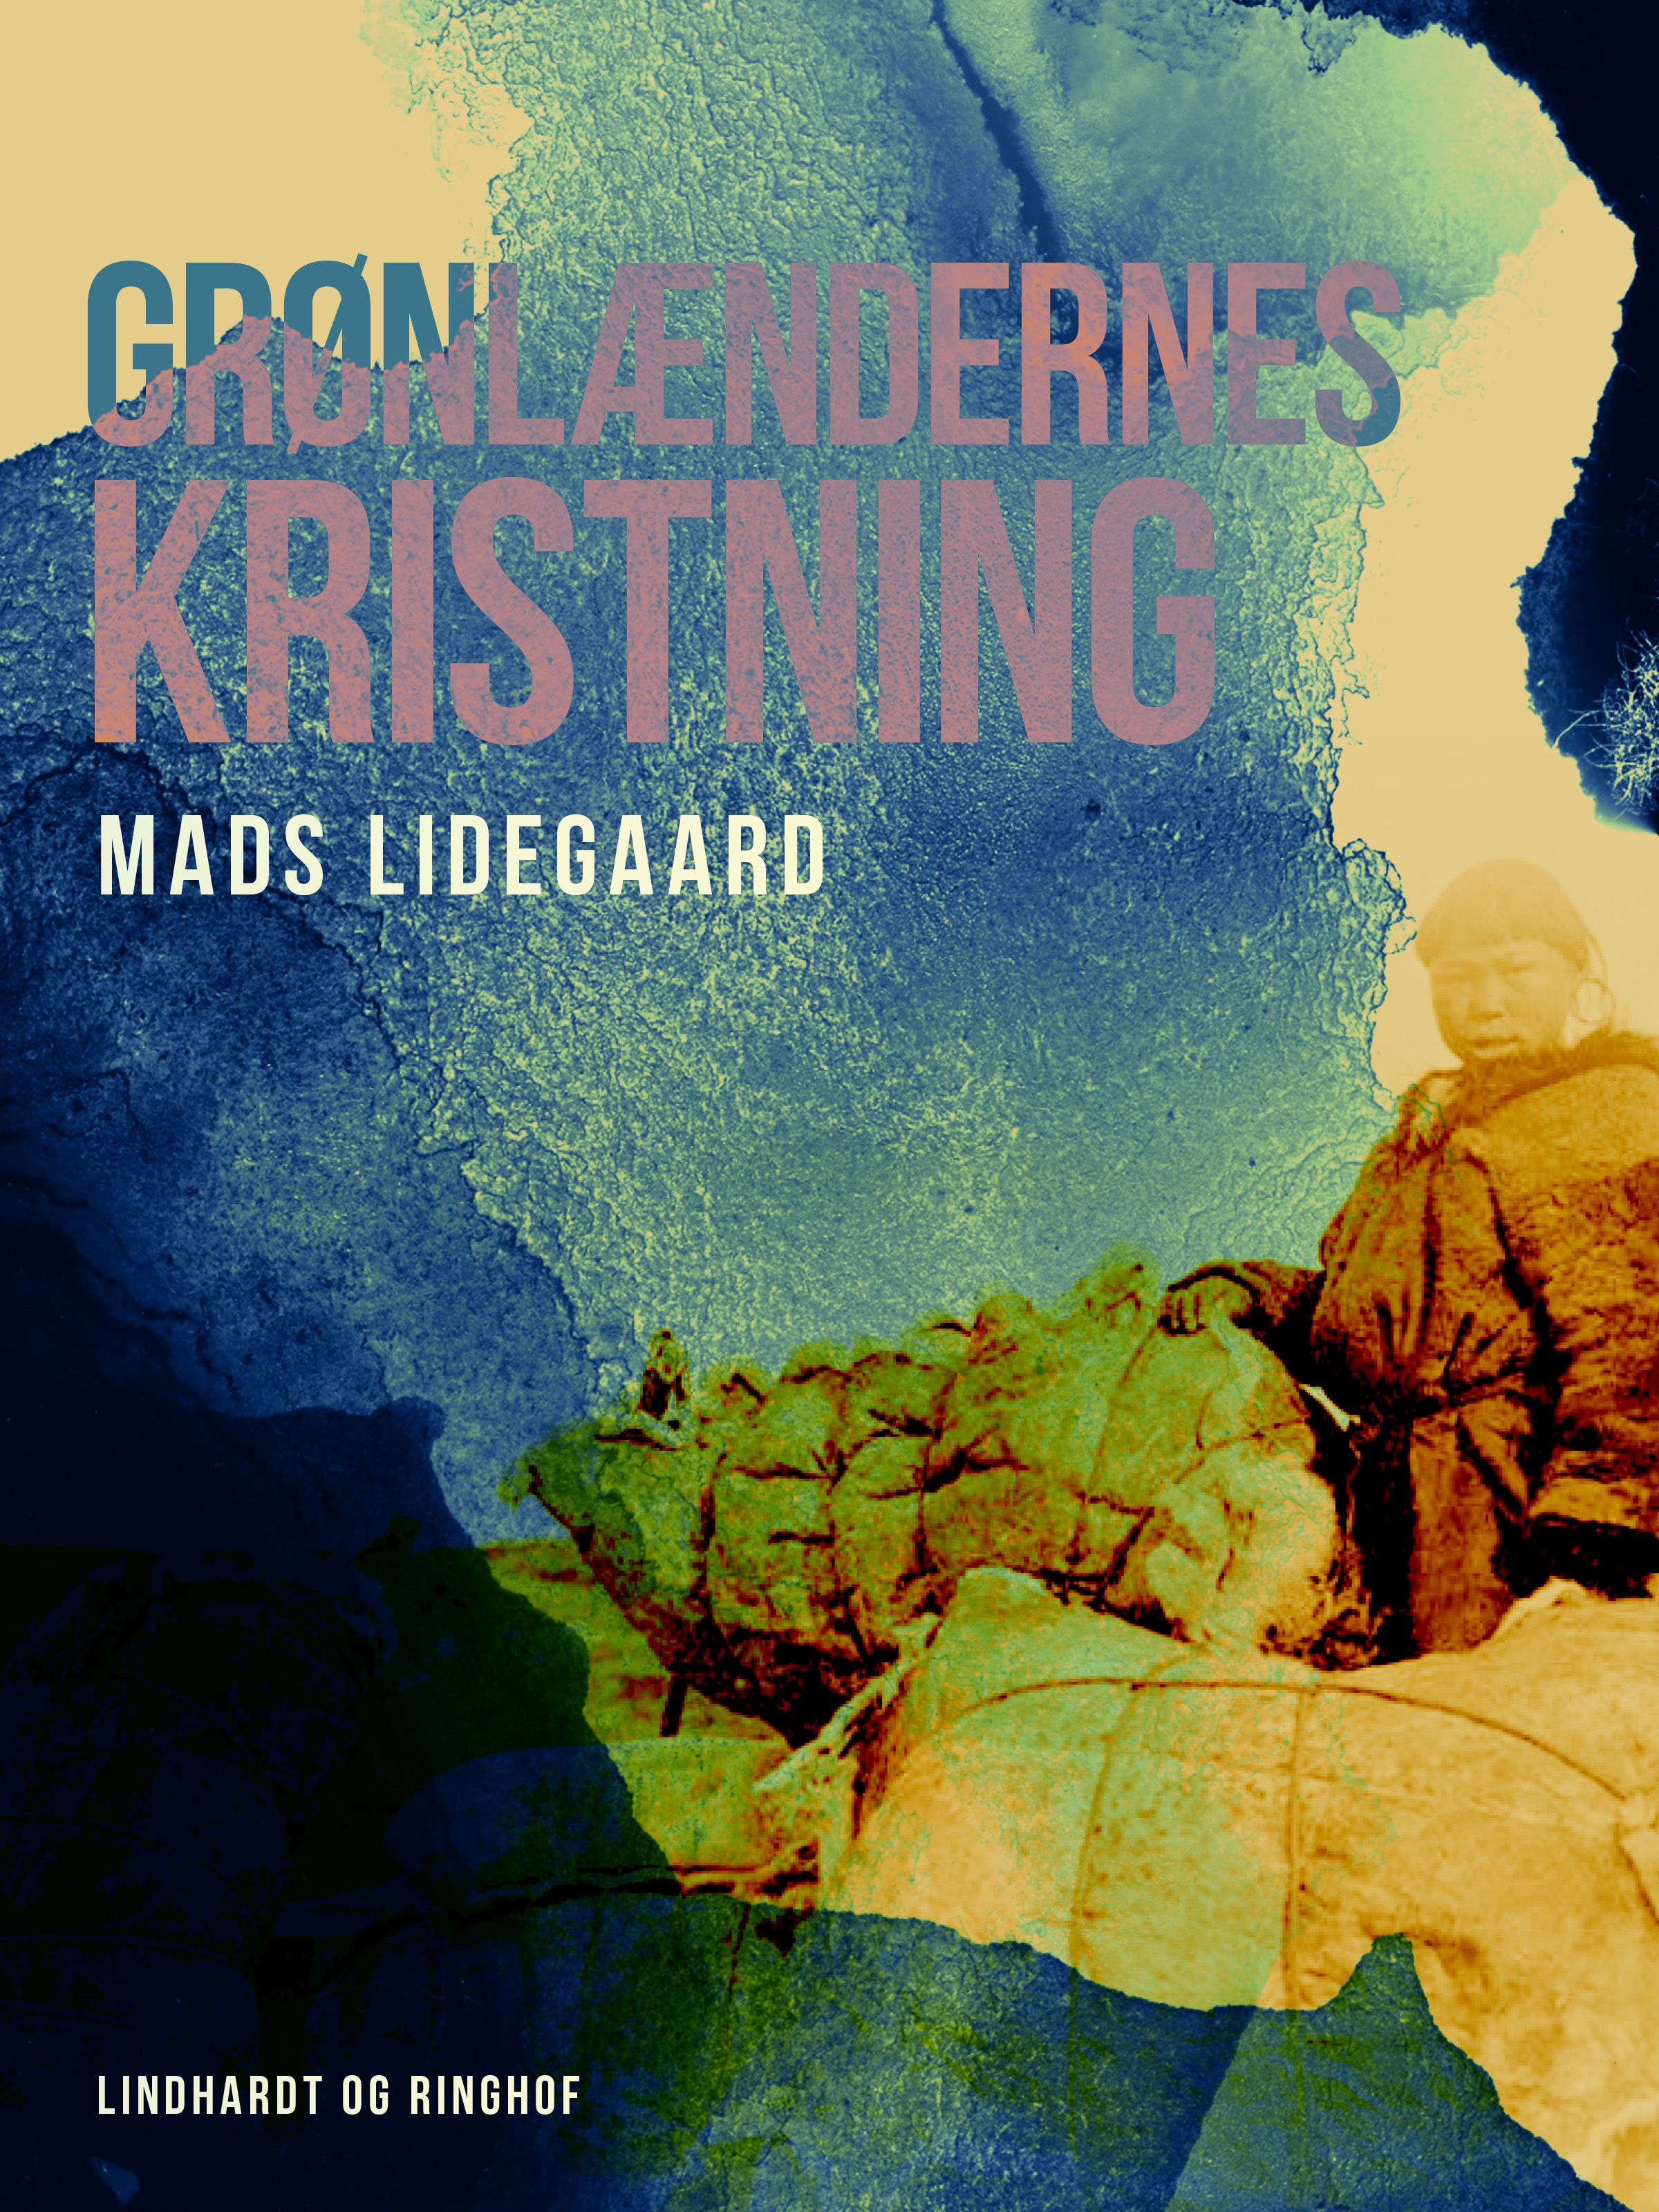 Grønlændernes kristning, e-bog af Mads Lidegaard